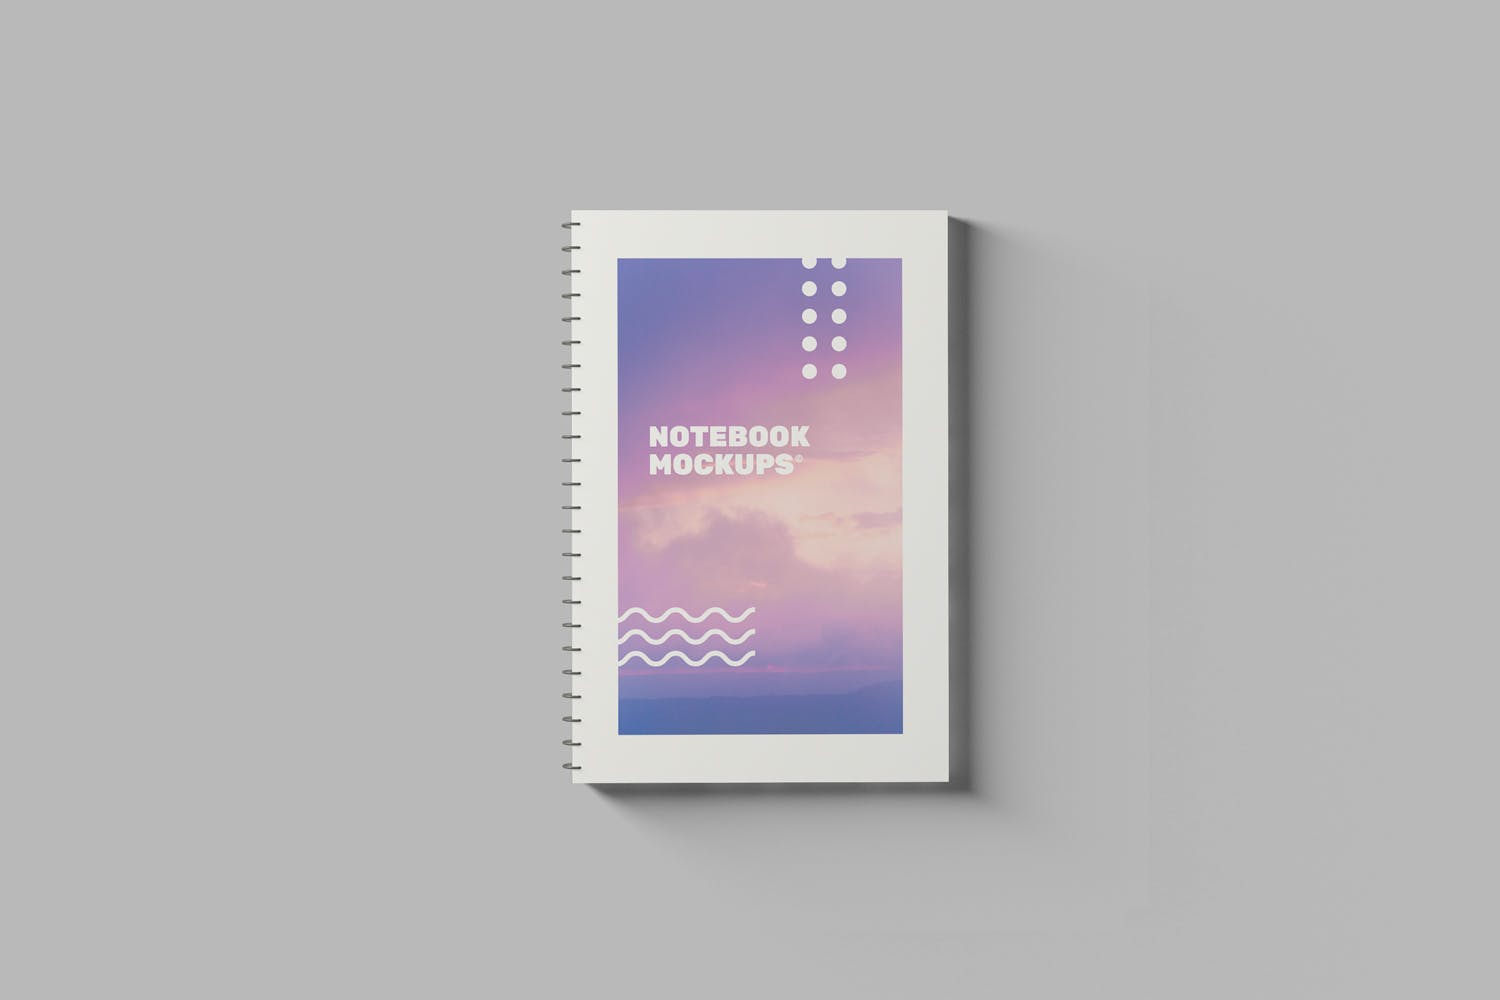 活页记事本封面设计效果图样机 Notebook Mockups插图(1)